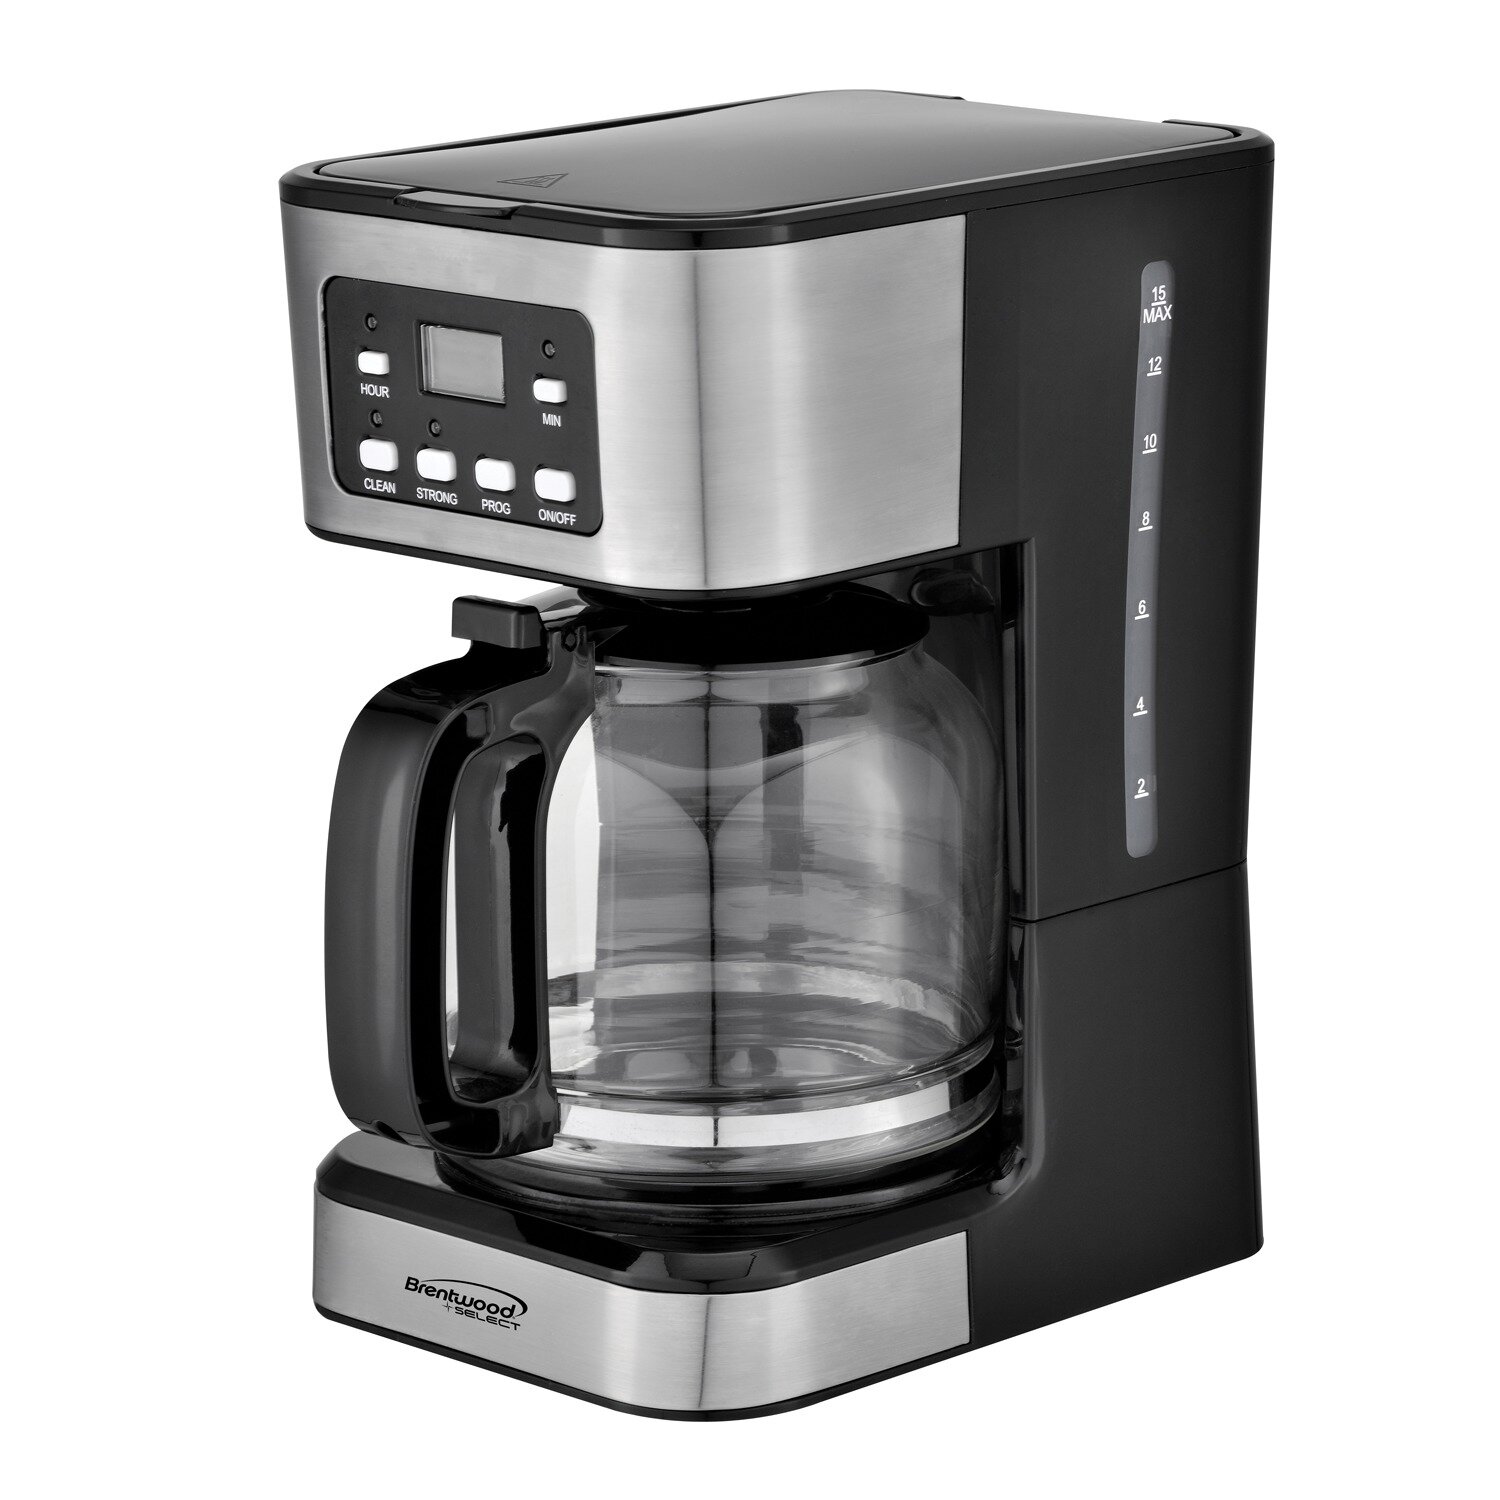 https://assets.wfcdn.com/im/45258044/compr-r85/1104/110444091/brentwood-appliances-12-cup-digital-coffee-maker.jpg